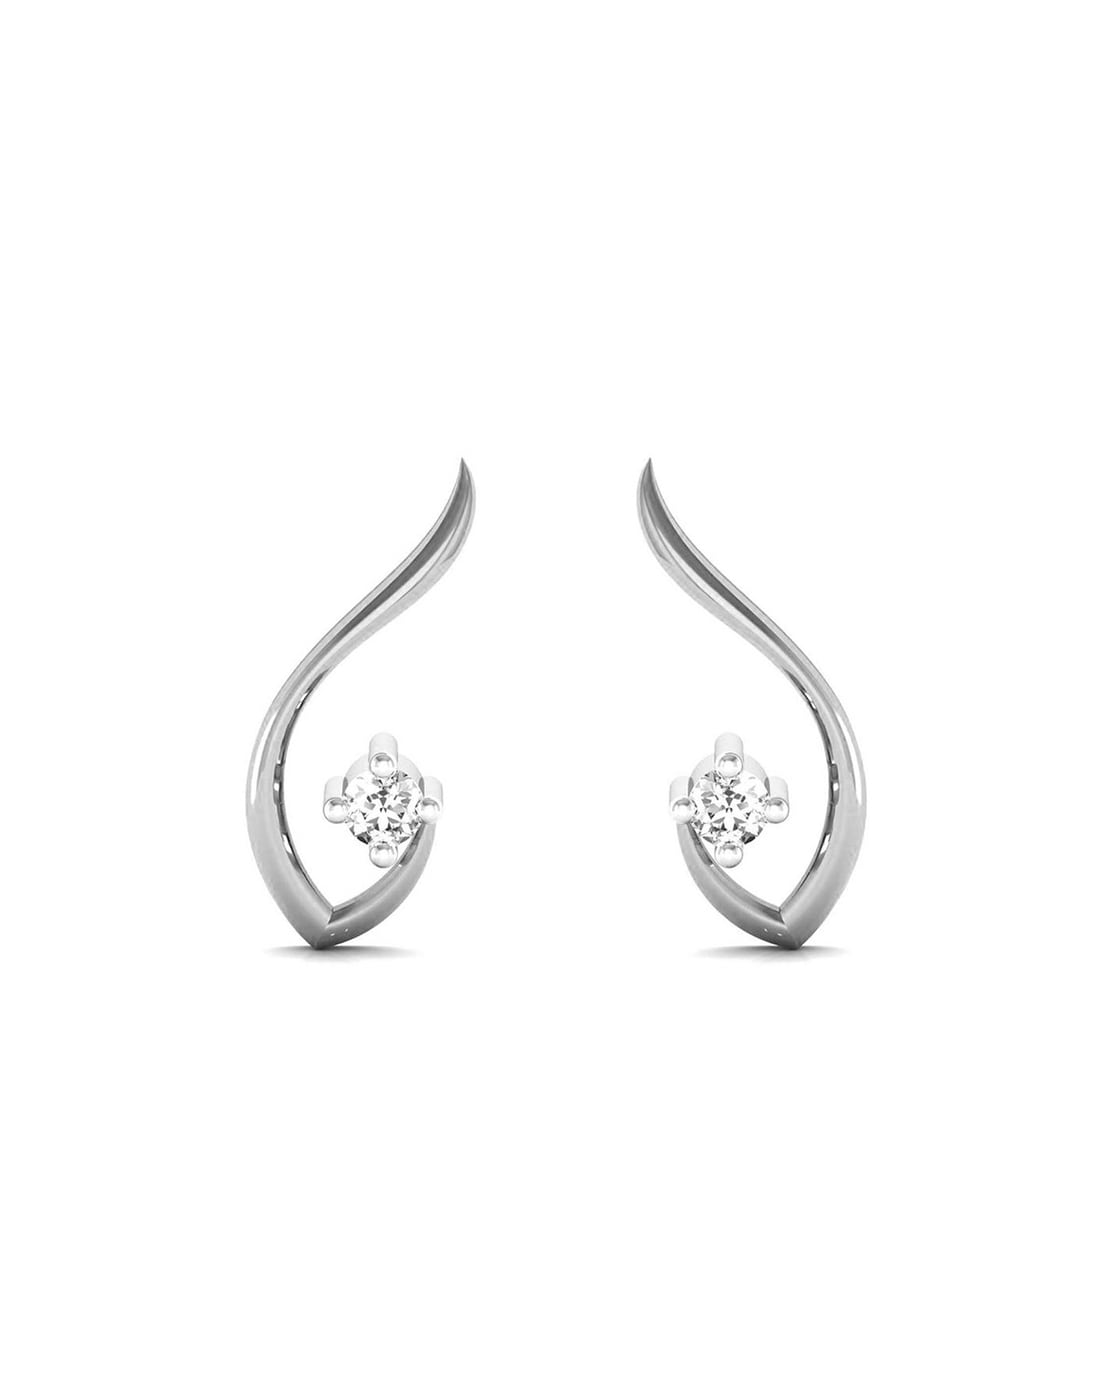 White Gold Earrings - Buy White Gold Earrings online in India